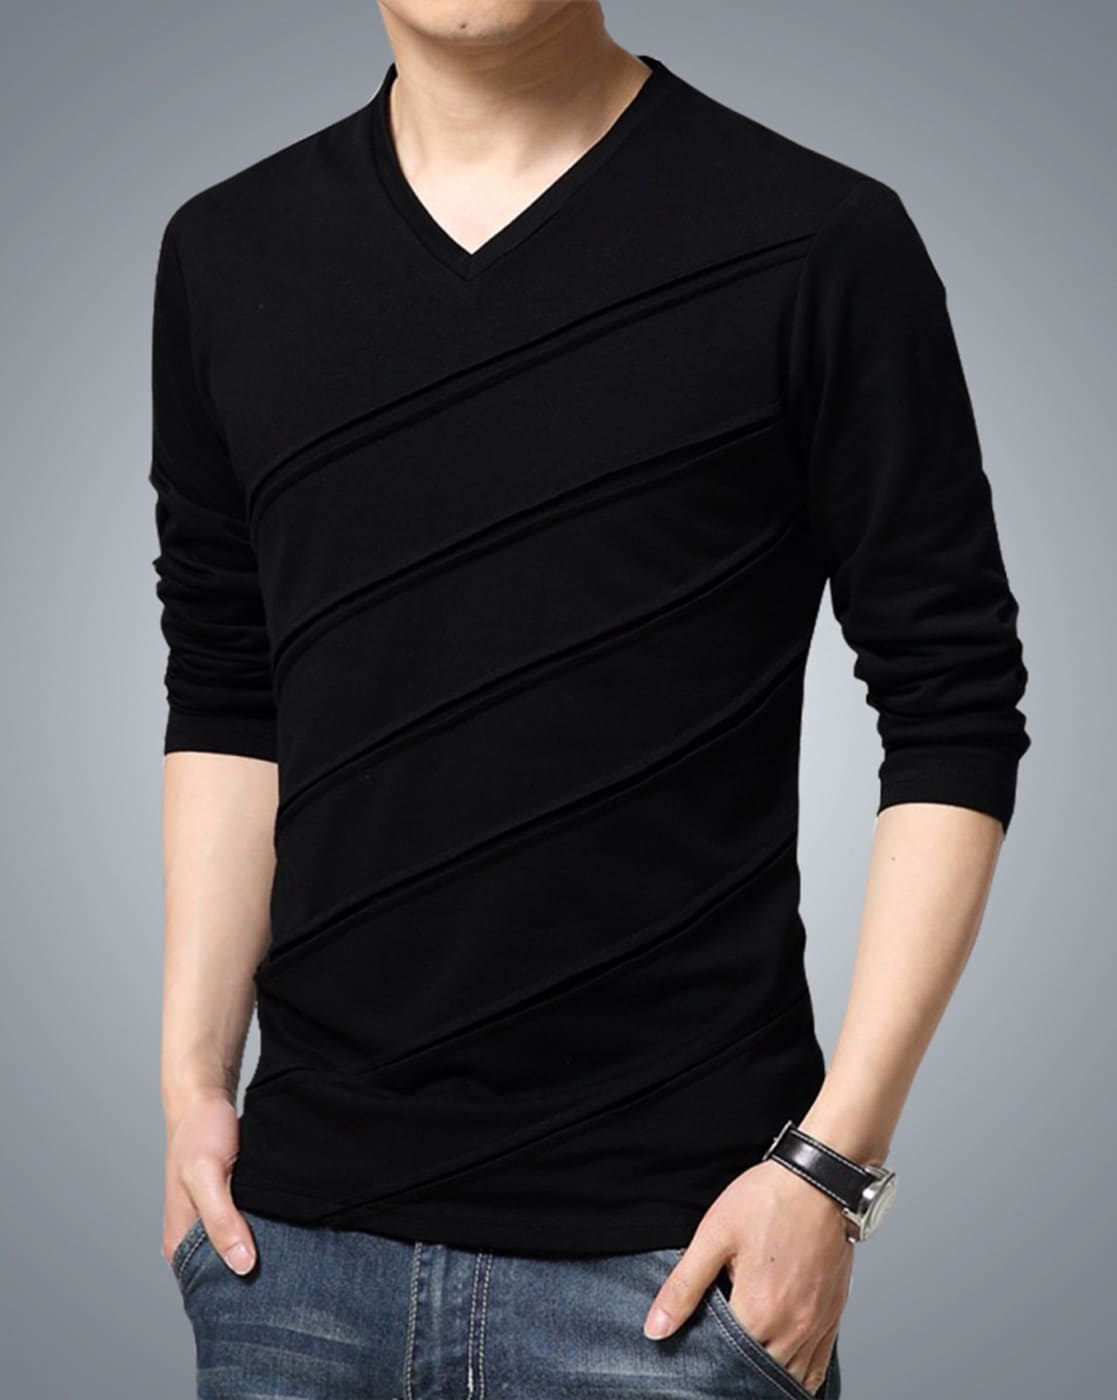 Black T Shirt Full Sleeve | vlr.eng.br